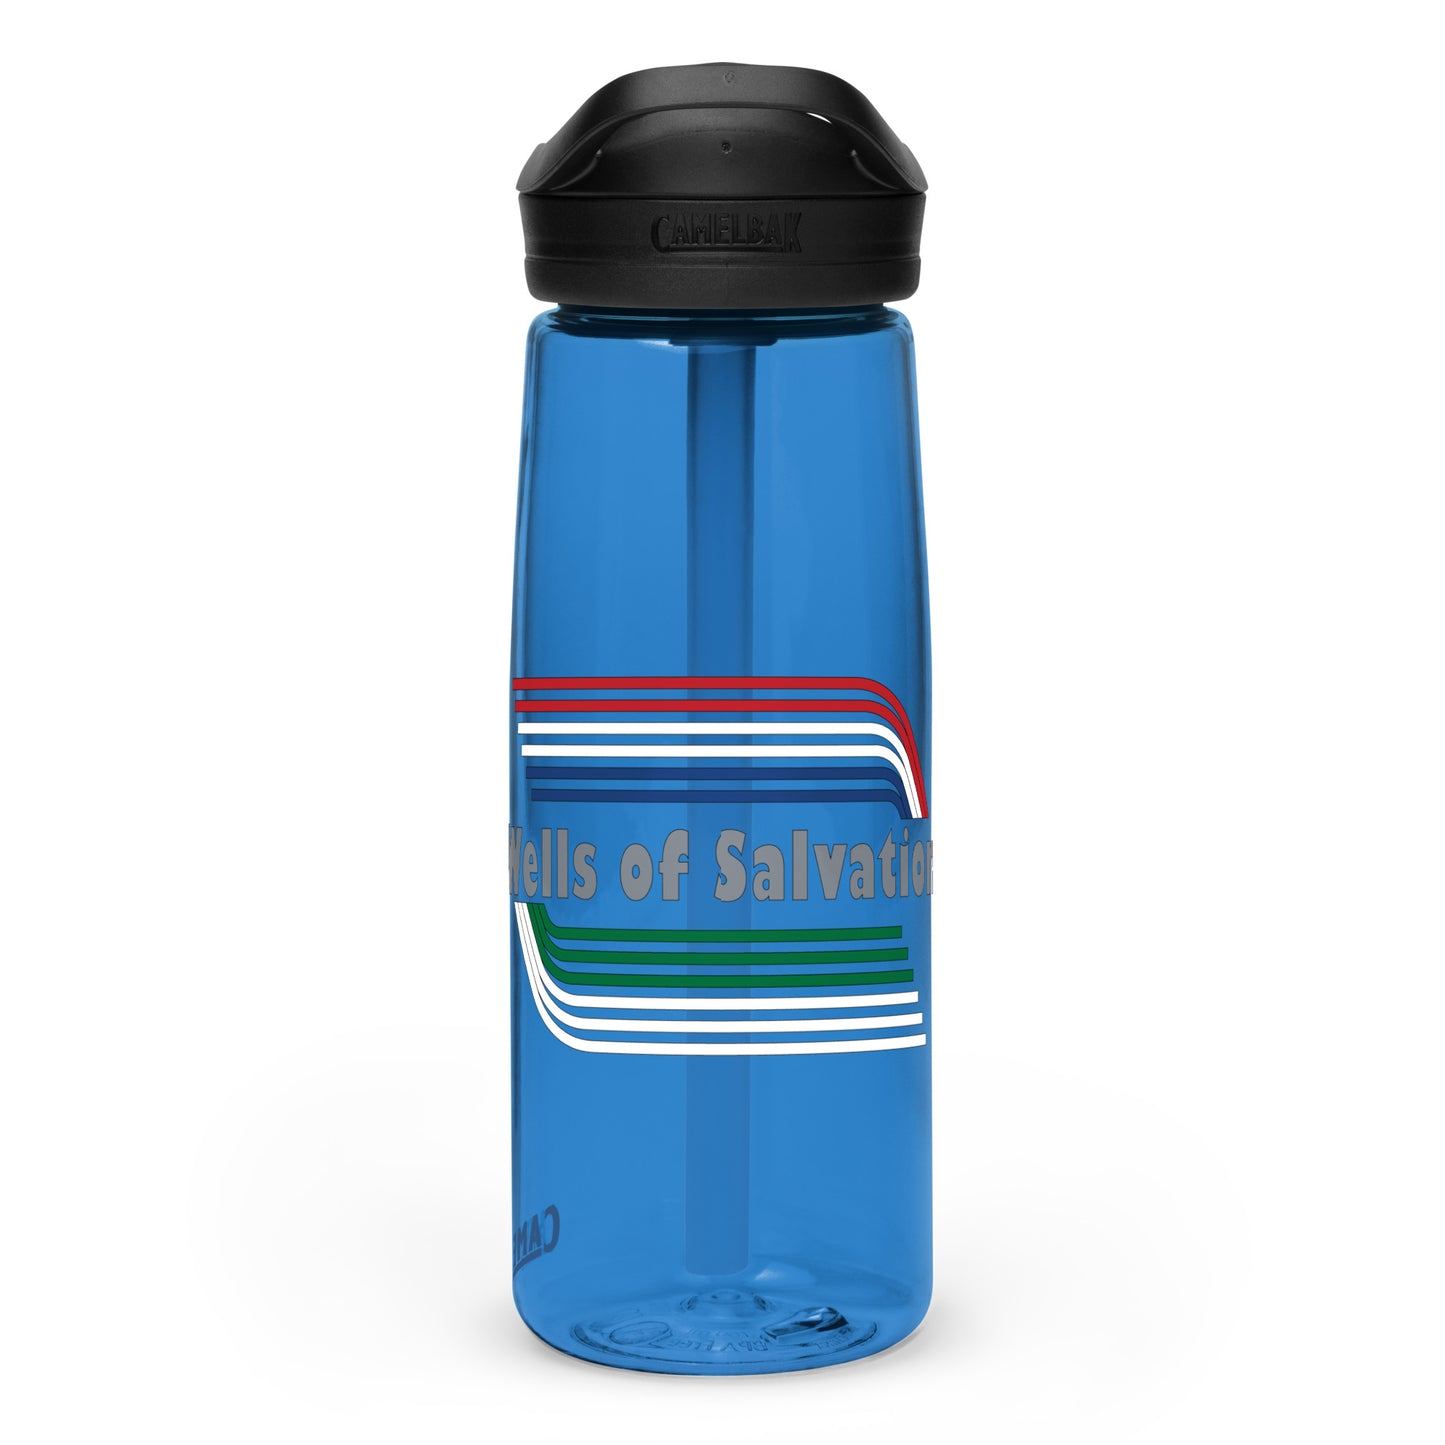 Wells Sports water bottle